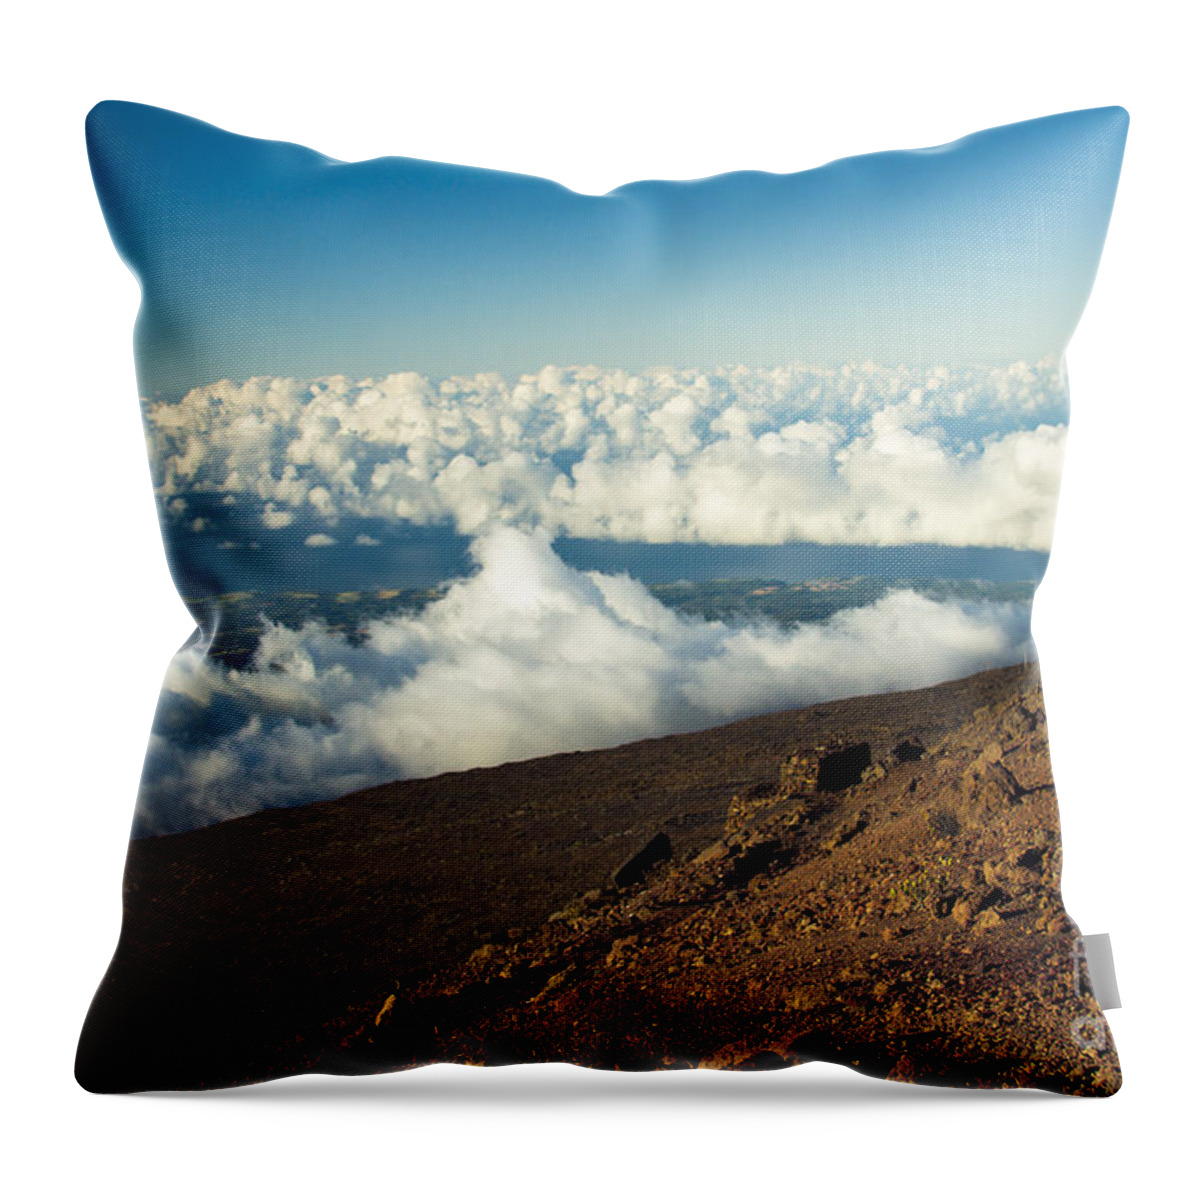 Haleakala Throw Pillow featuring the photograph Haleakala Maui Hawaii #3 by Sharon Mau